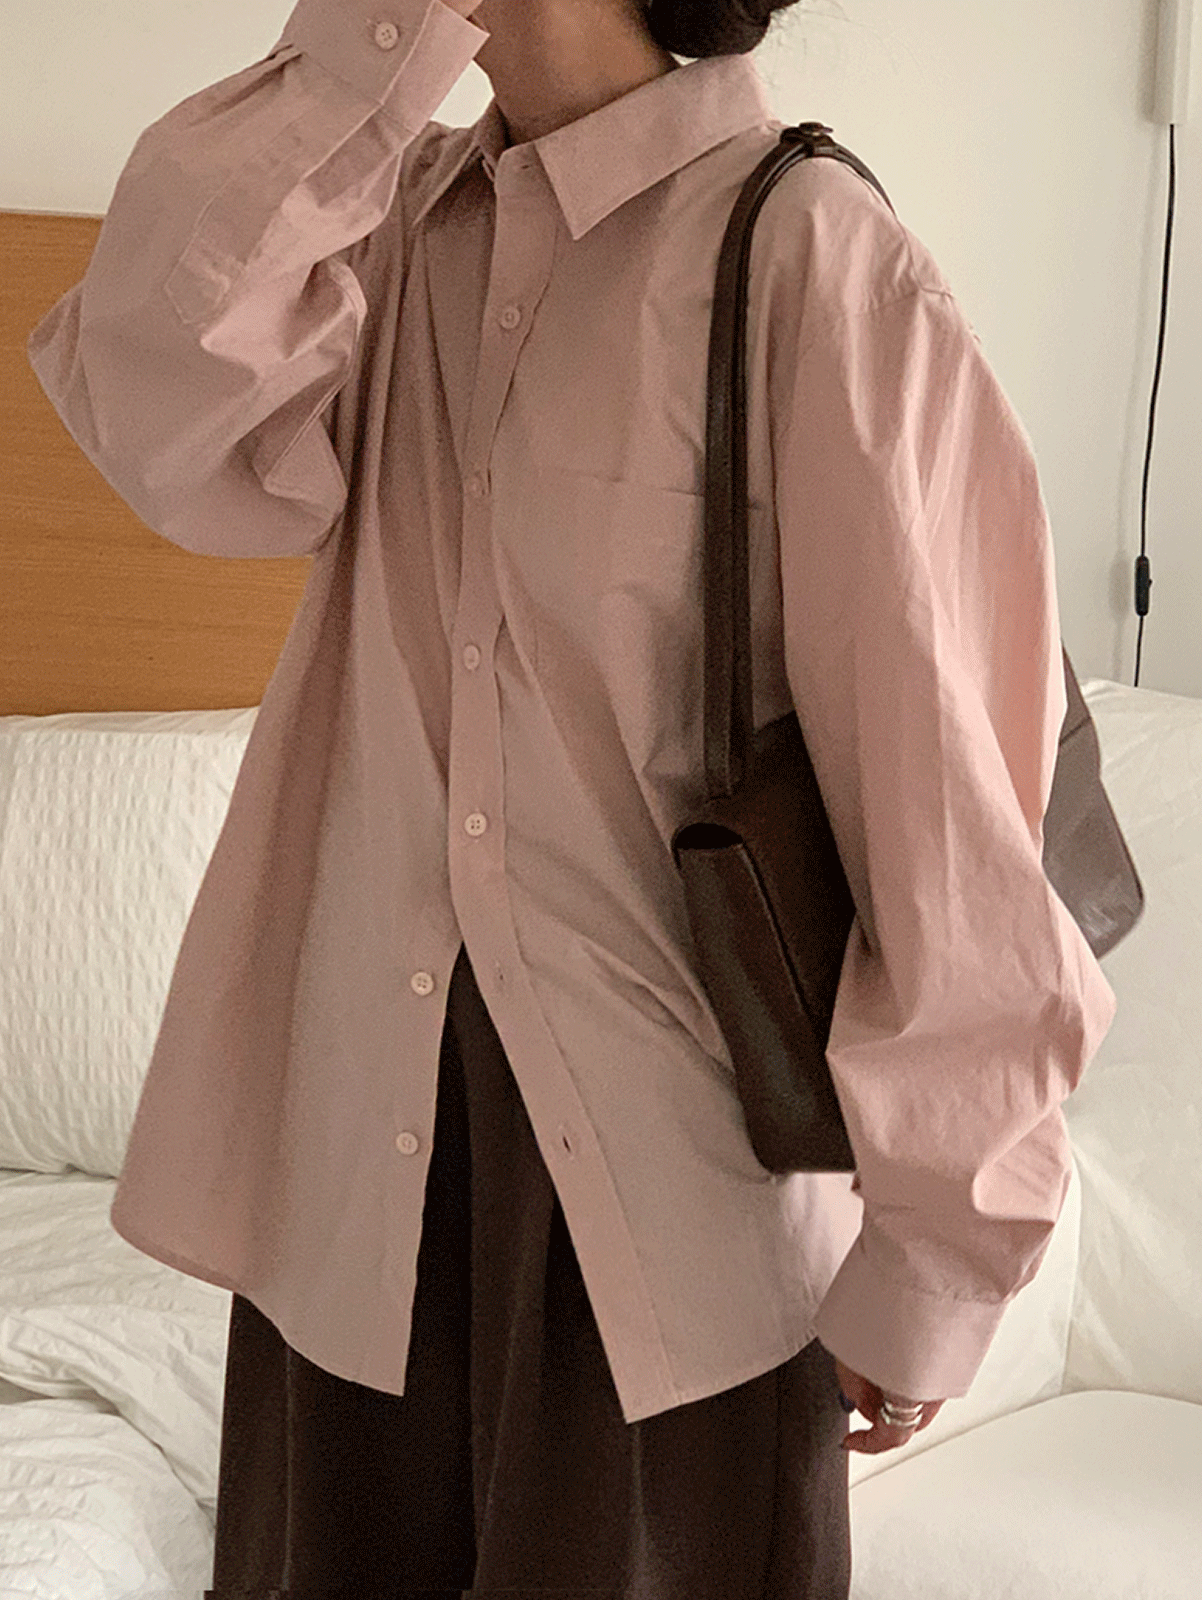 [당일발송] clean cotton shirts (8colors) 주문폭주! 소라, 연베이지, 차콜, 핑크, 화이트 당일발송